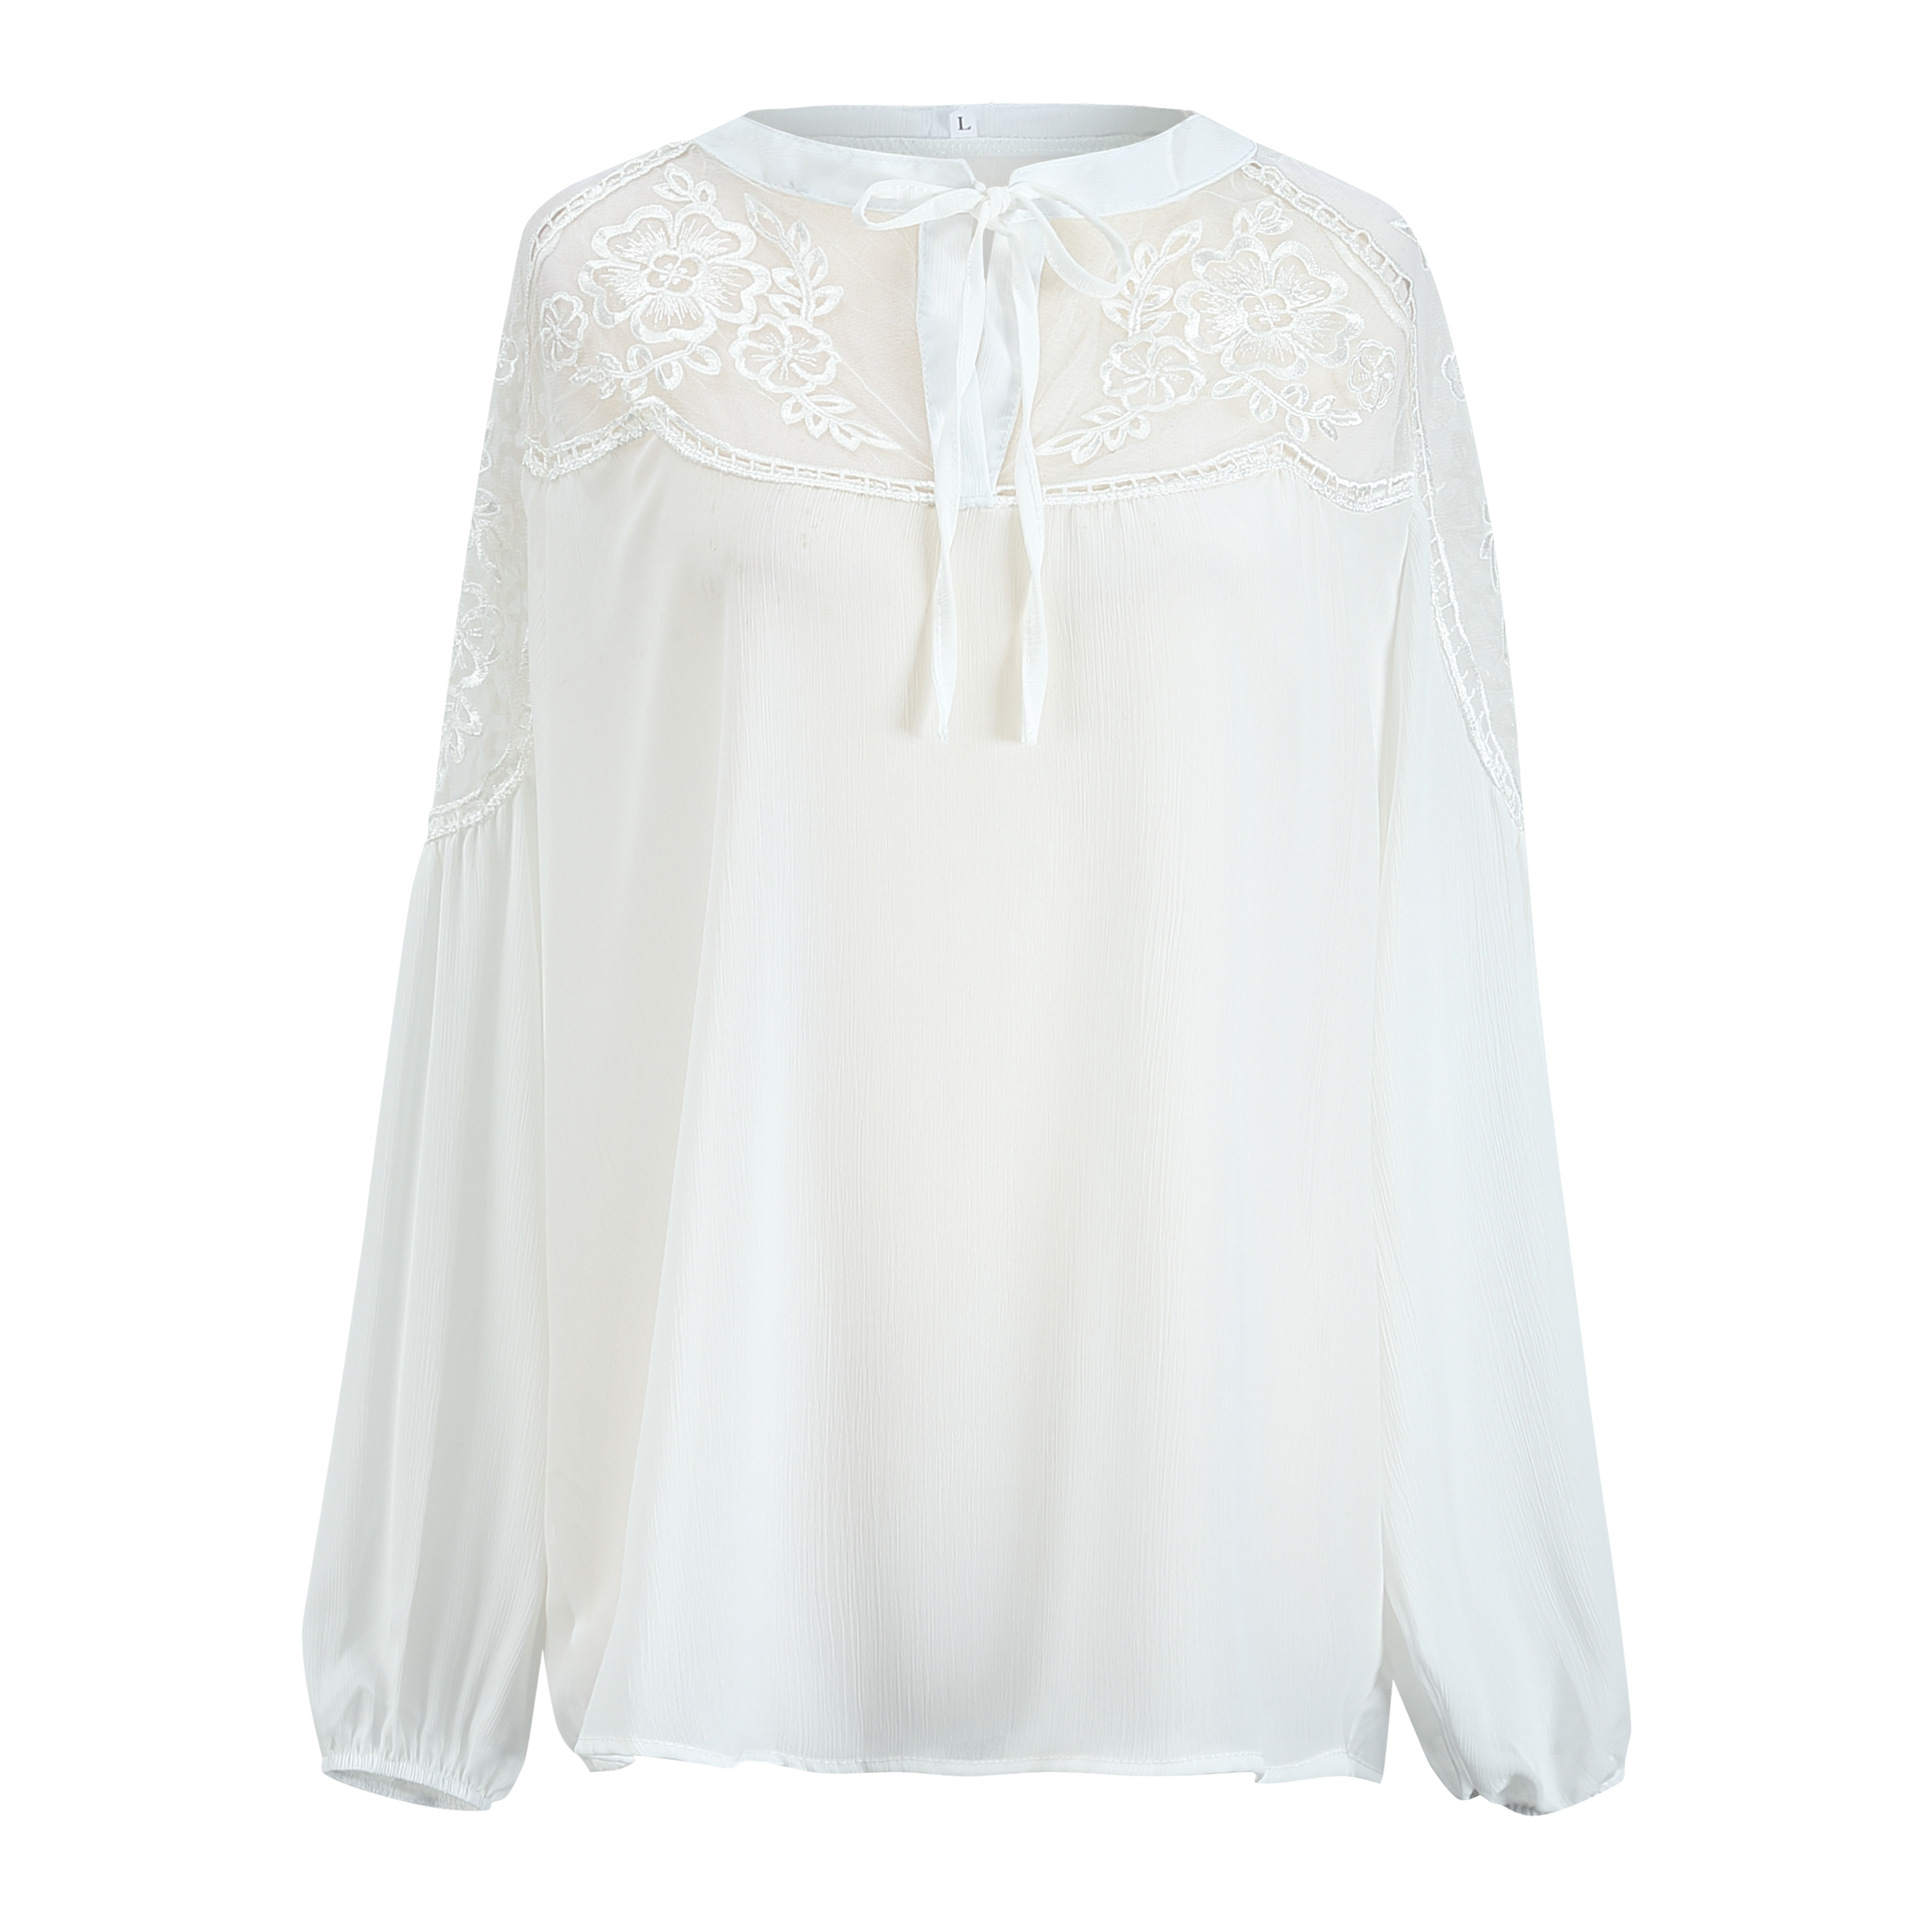 Boho white lace blouse free size Uk8-14blouse